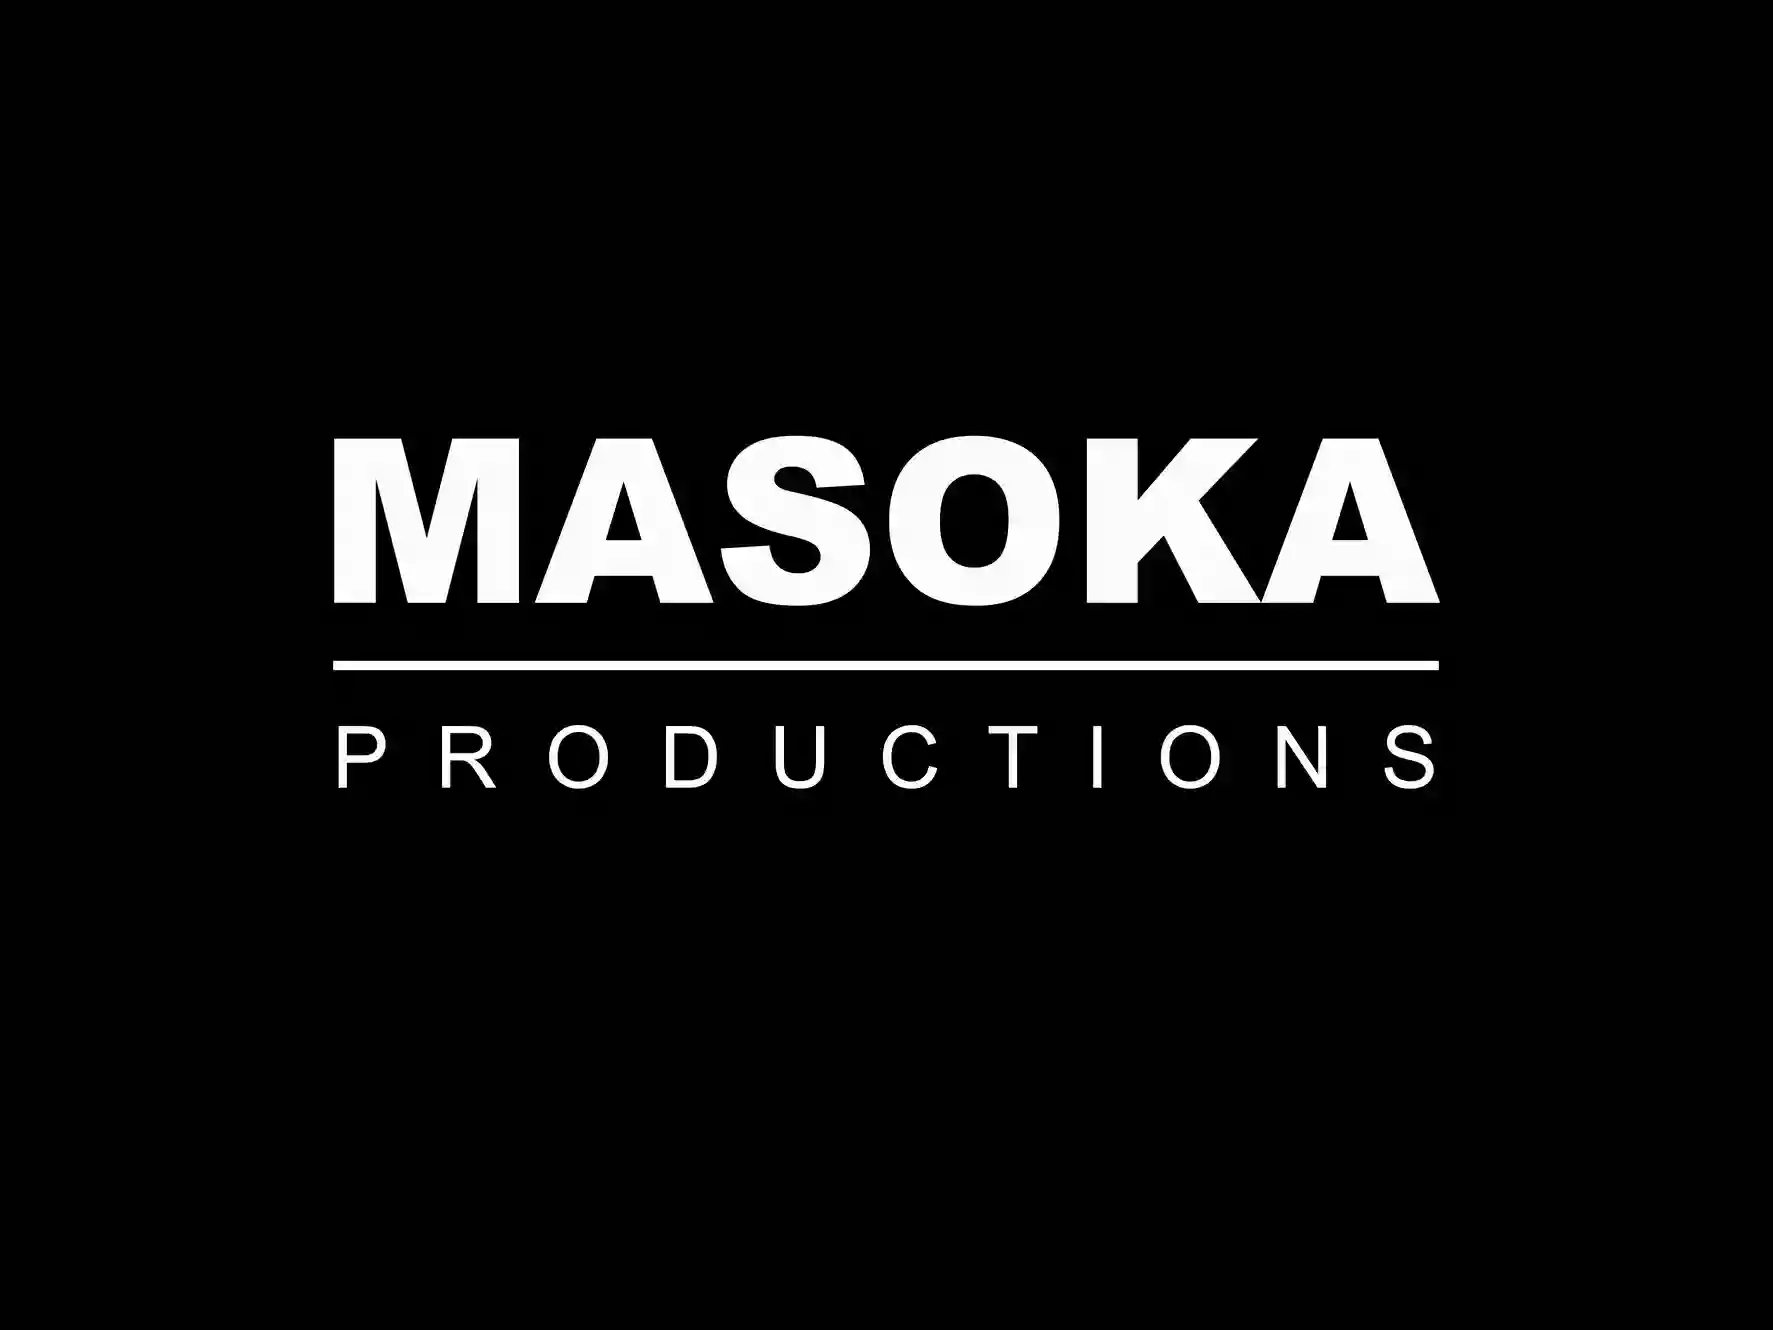 Masoka Productions